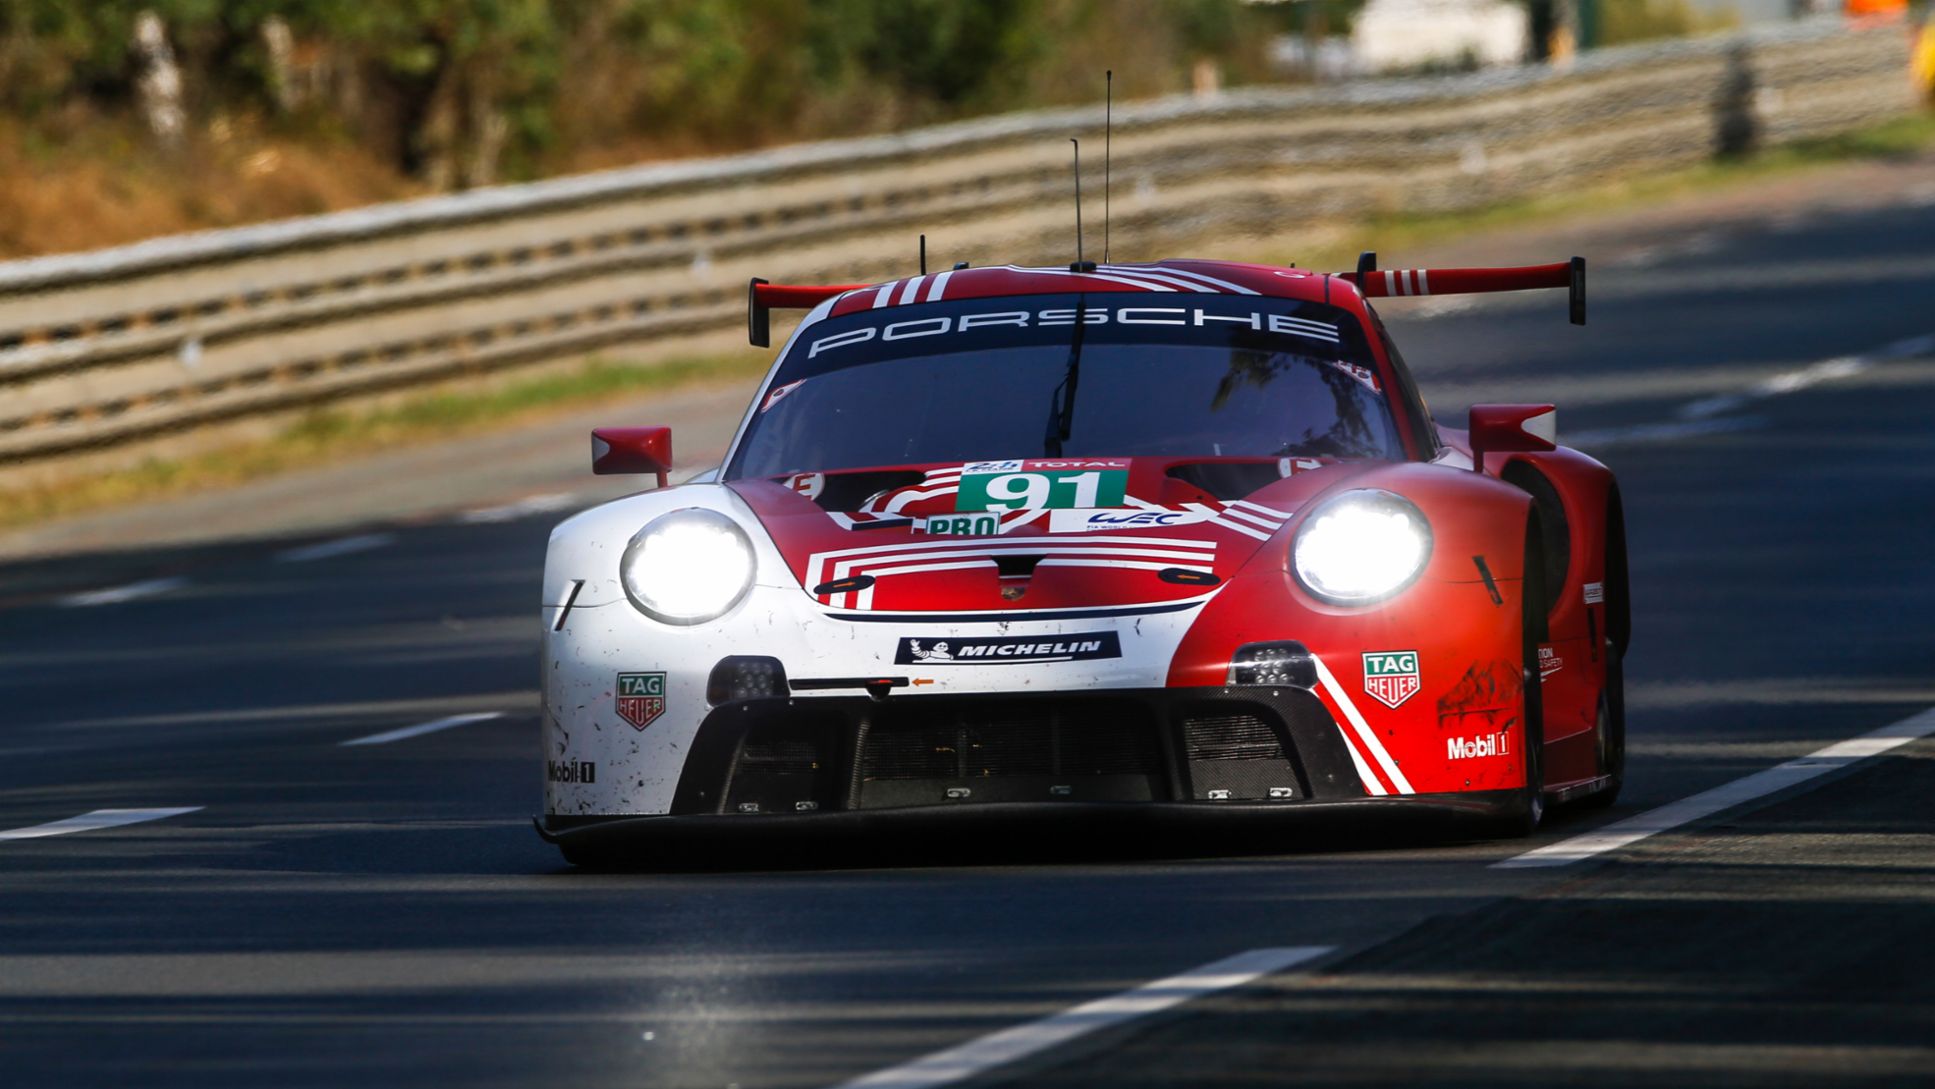 911 RSR, Qualifying, FIA WEC, Le Mans, 2020, Porsche AG